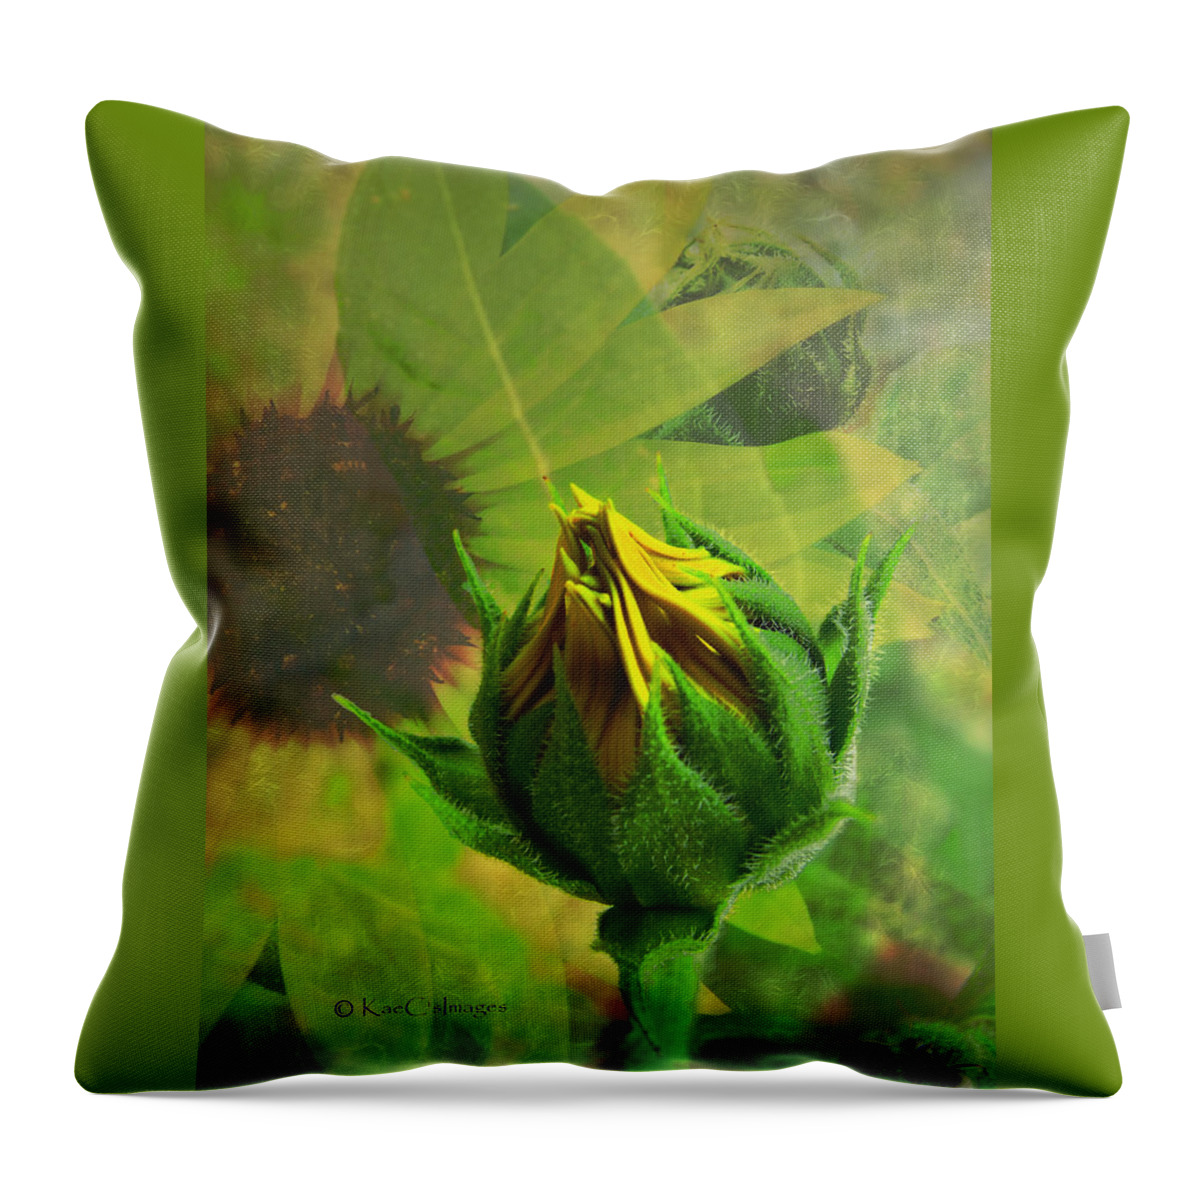 Sunflower Throw Pillow featuring the digital art Unfolding Sunflower by Kae Cheatham